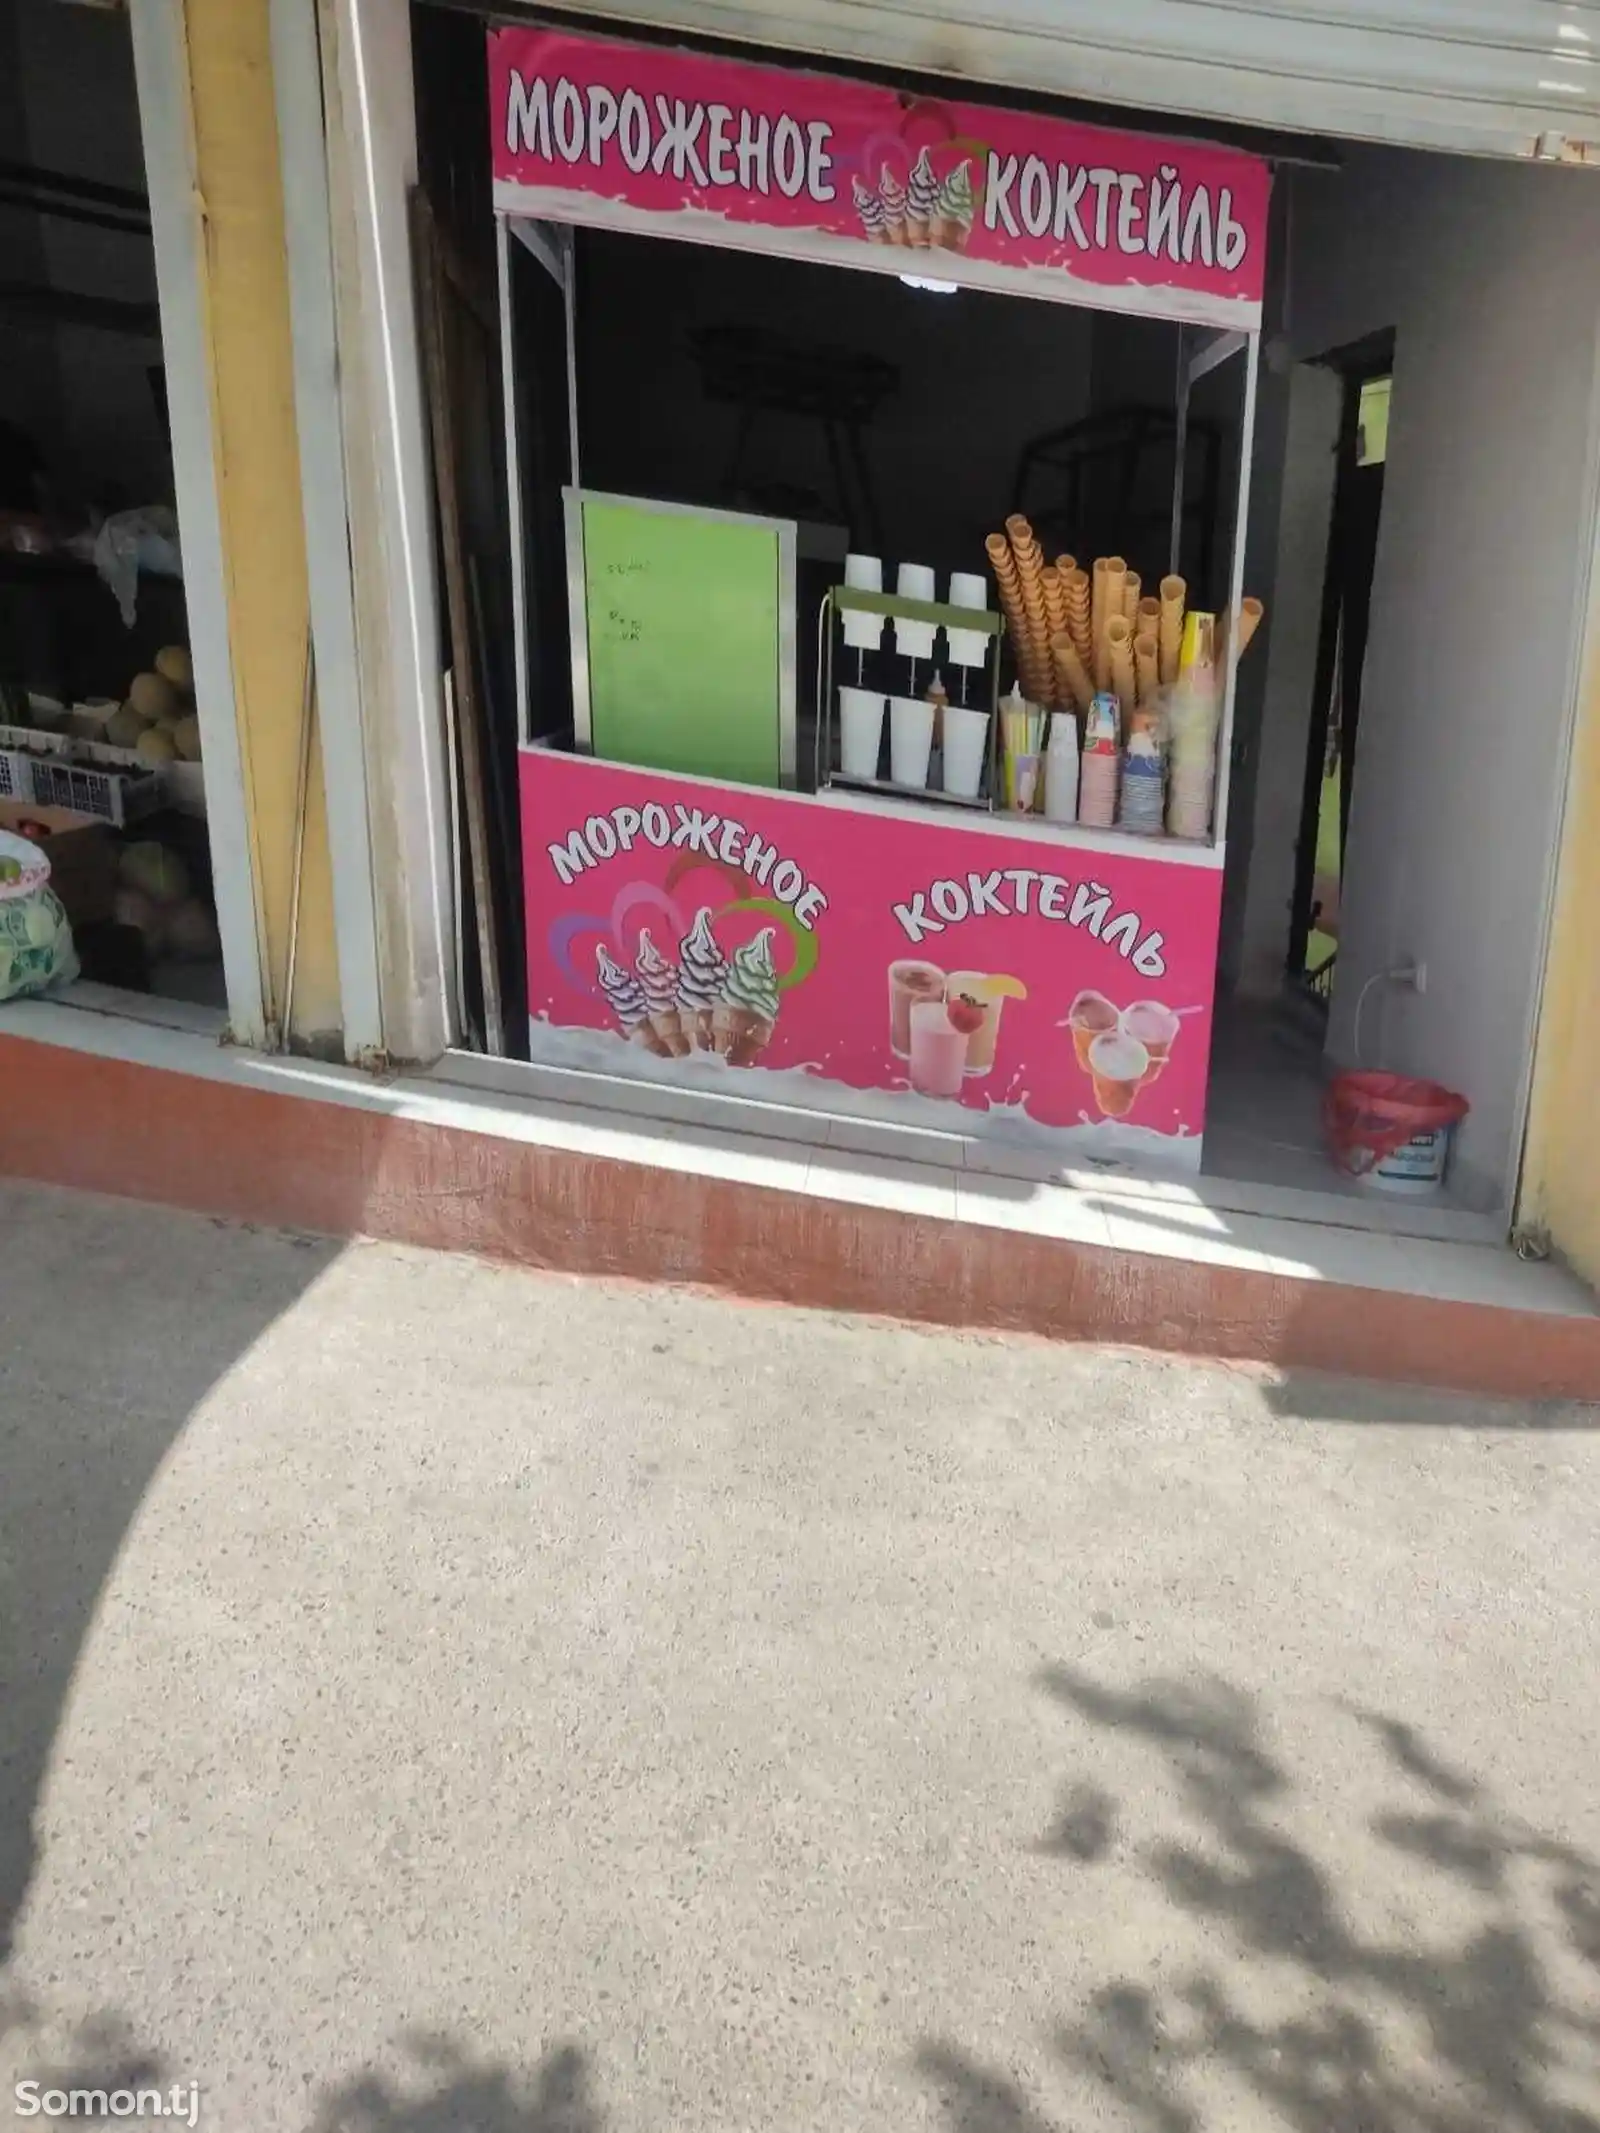 Комплект оборудования для продажи коктейлей и мороженого